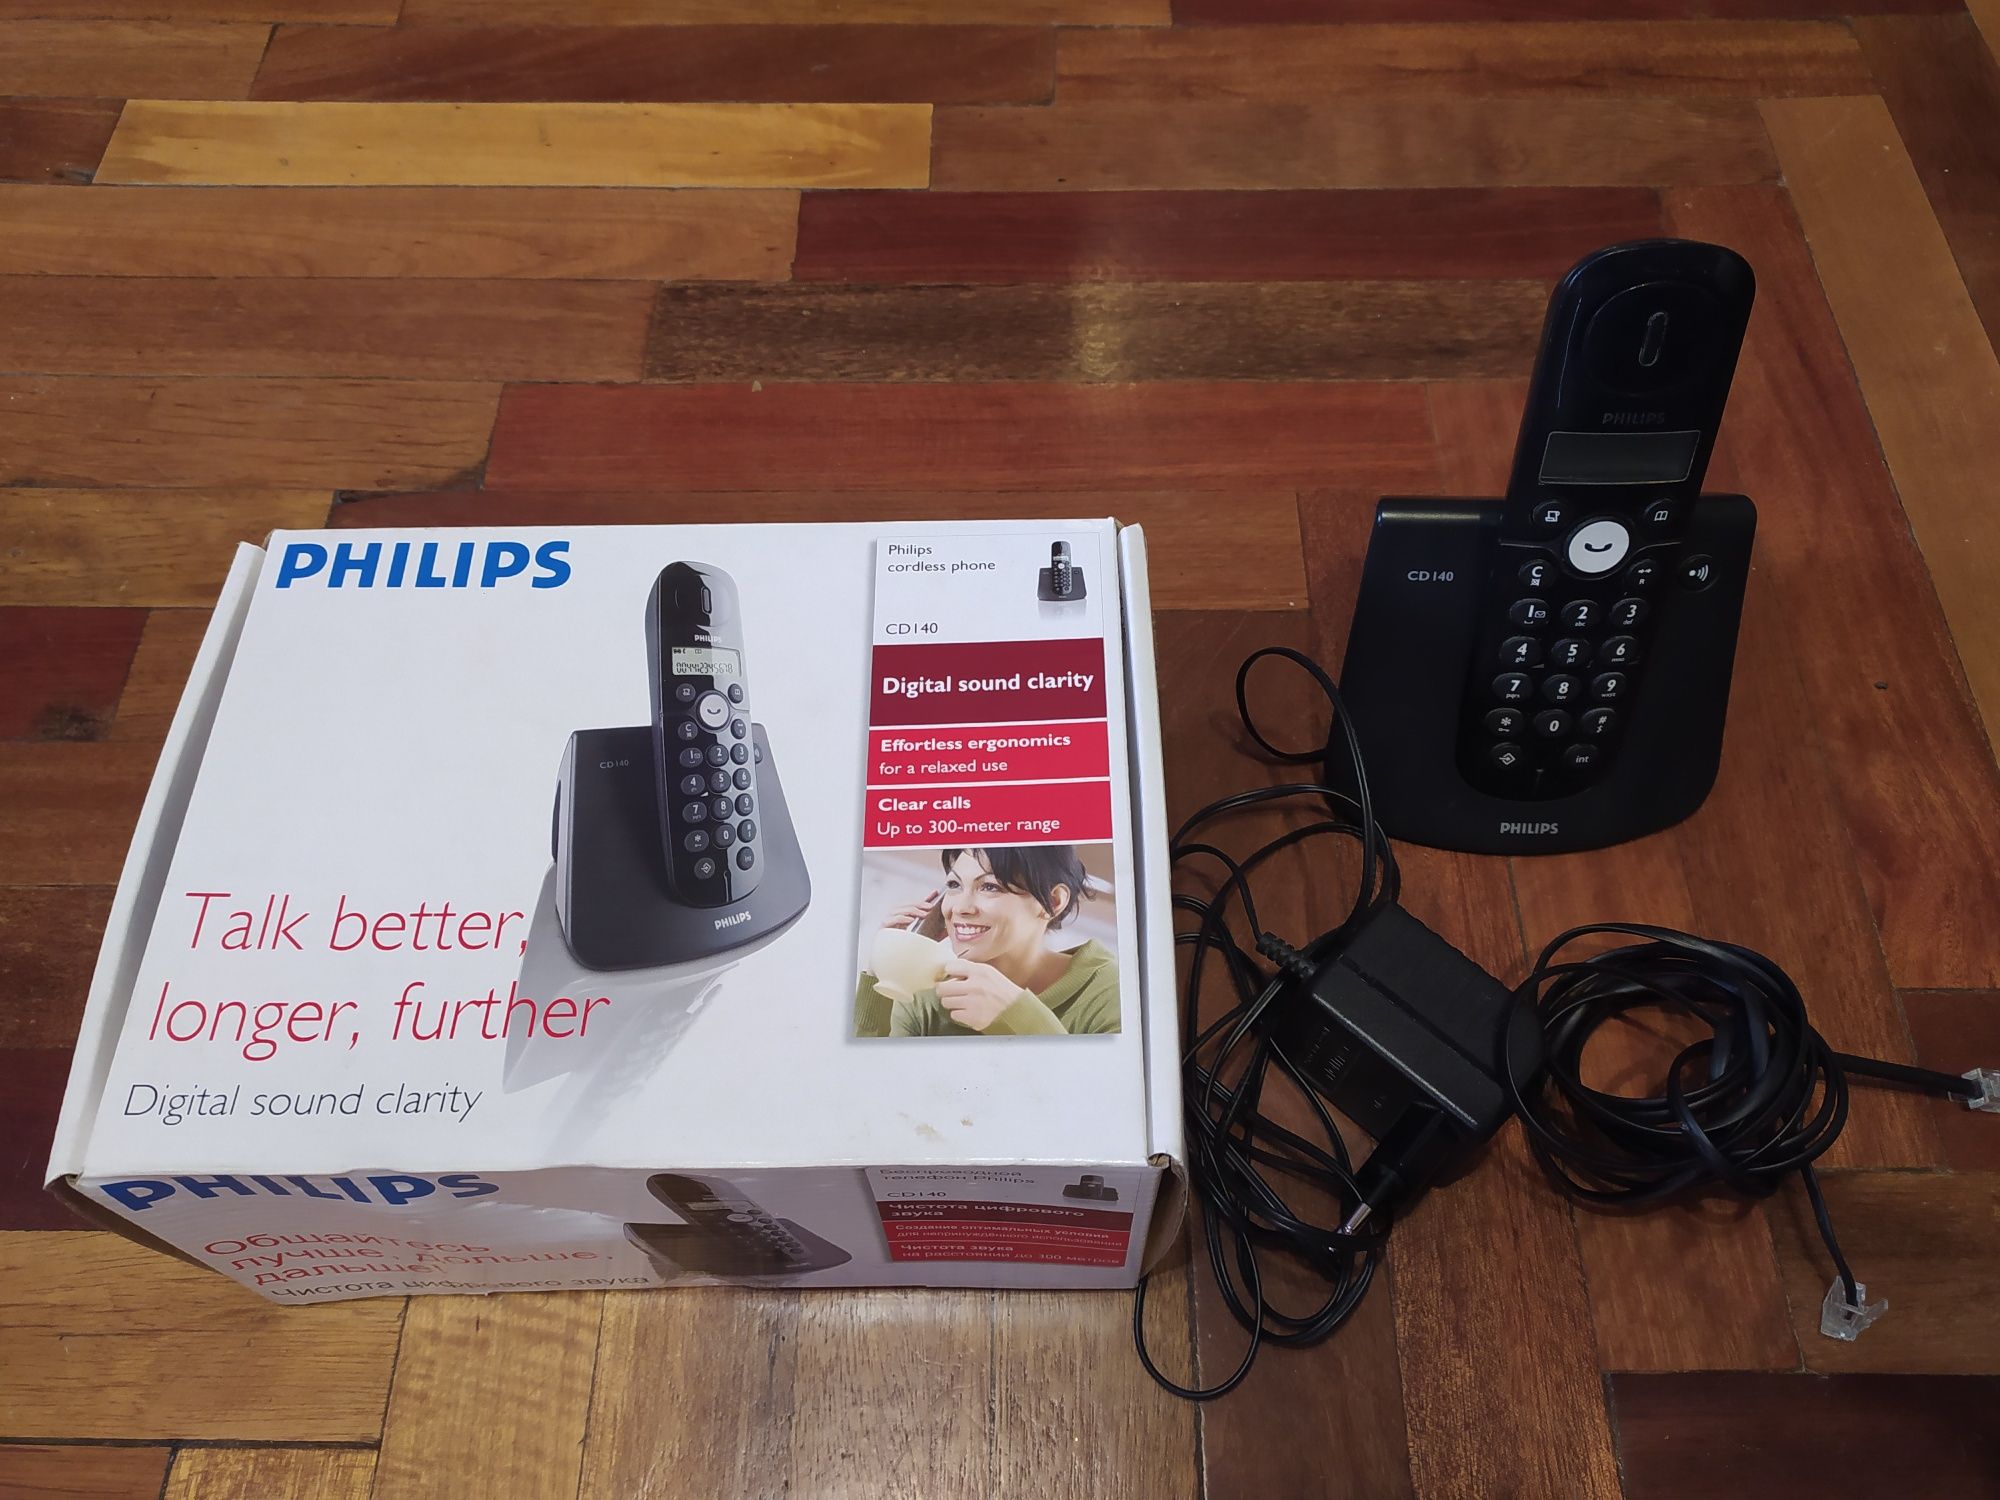 Телефон Philips CD 140